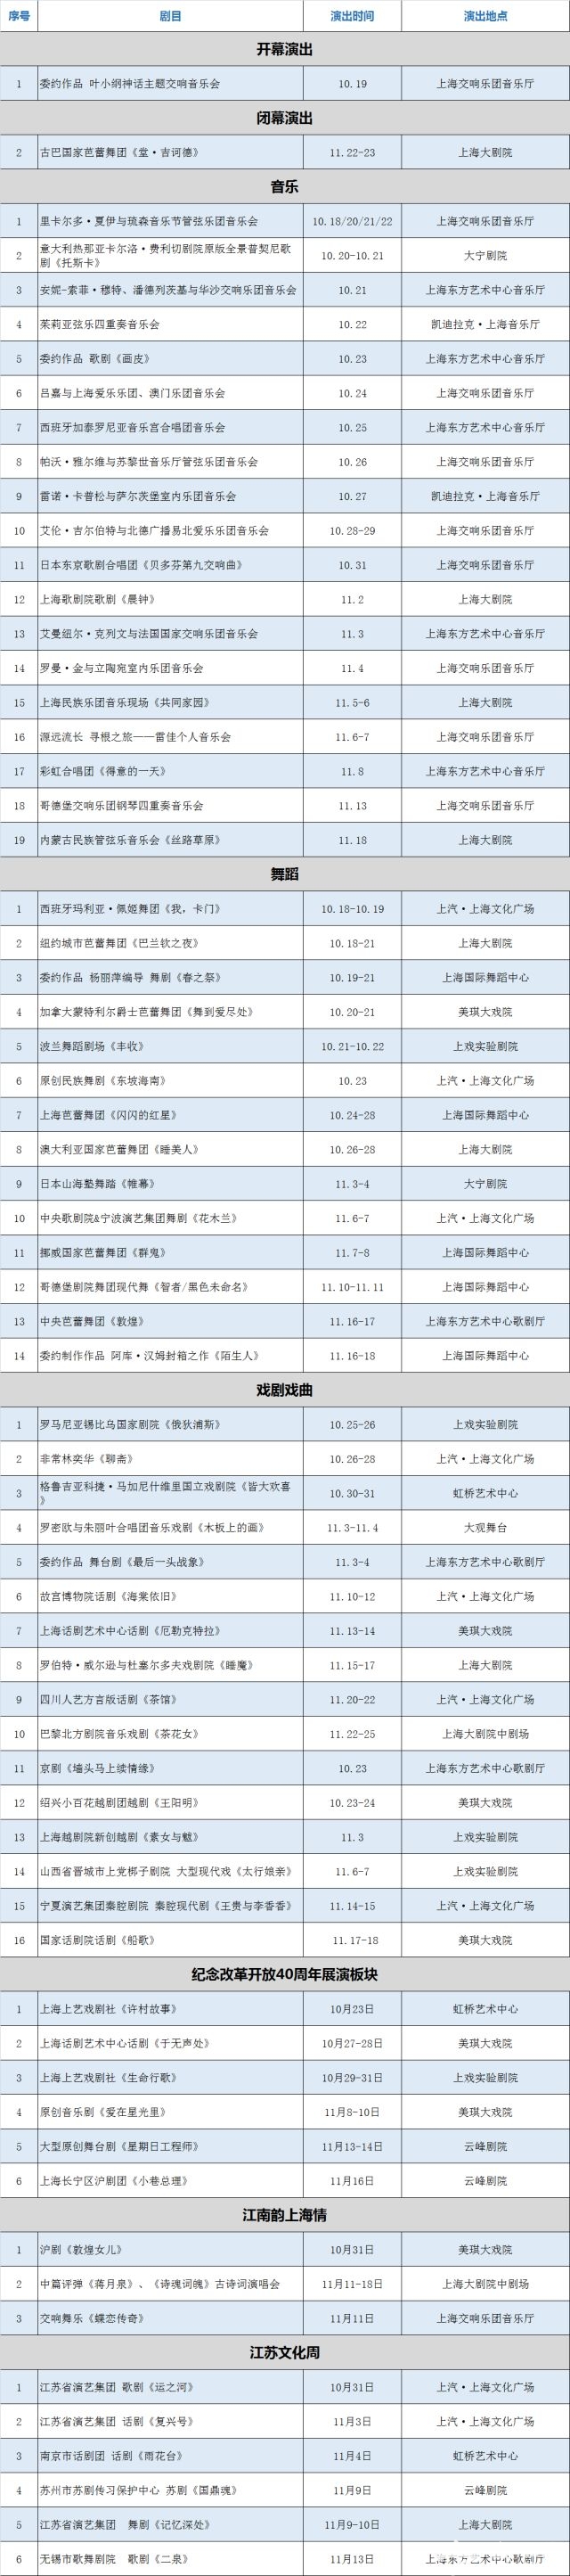 2018上海国际艺术节时间 演出节目单 门票